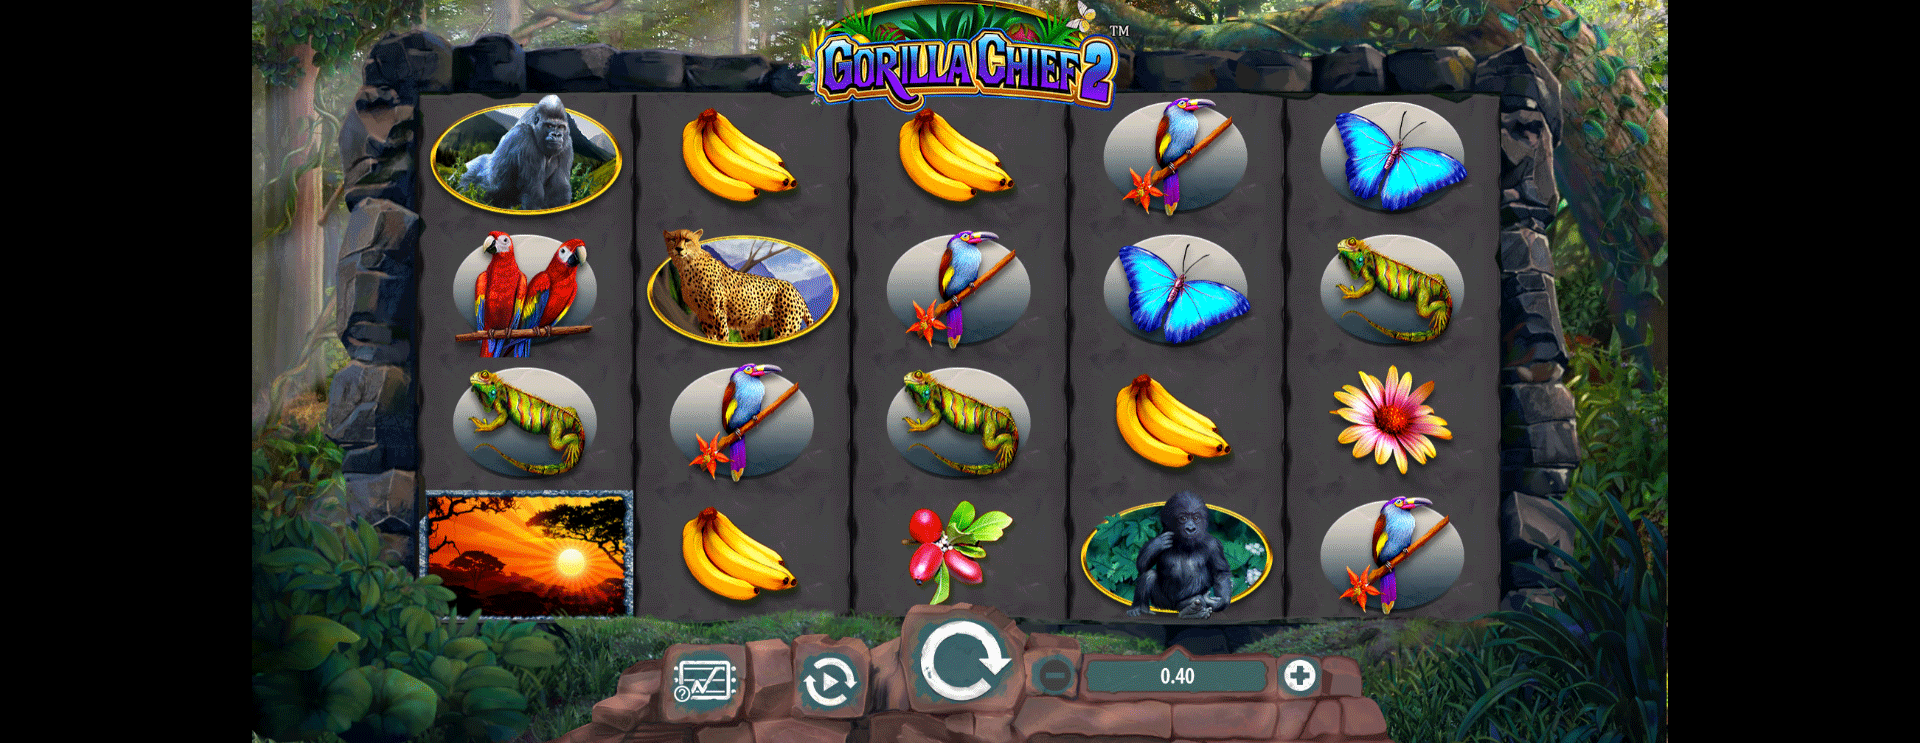 schermata della slot machine gorilla chief 2